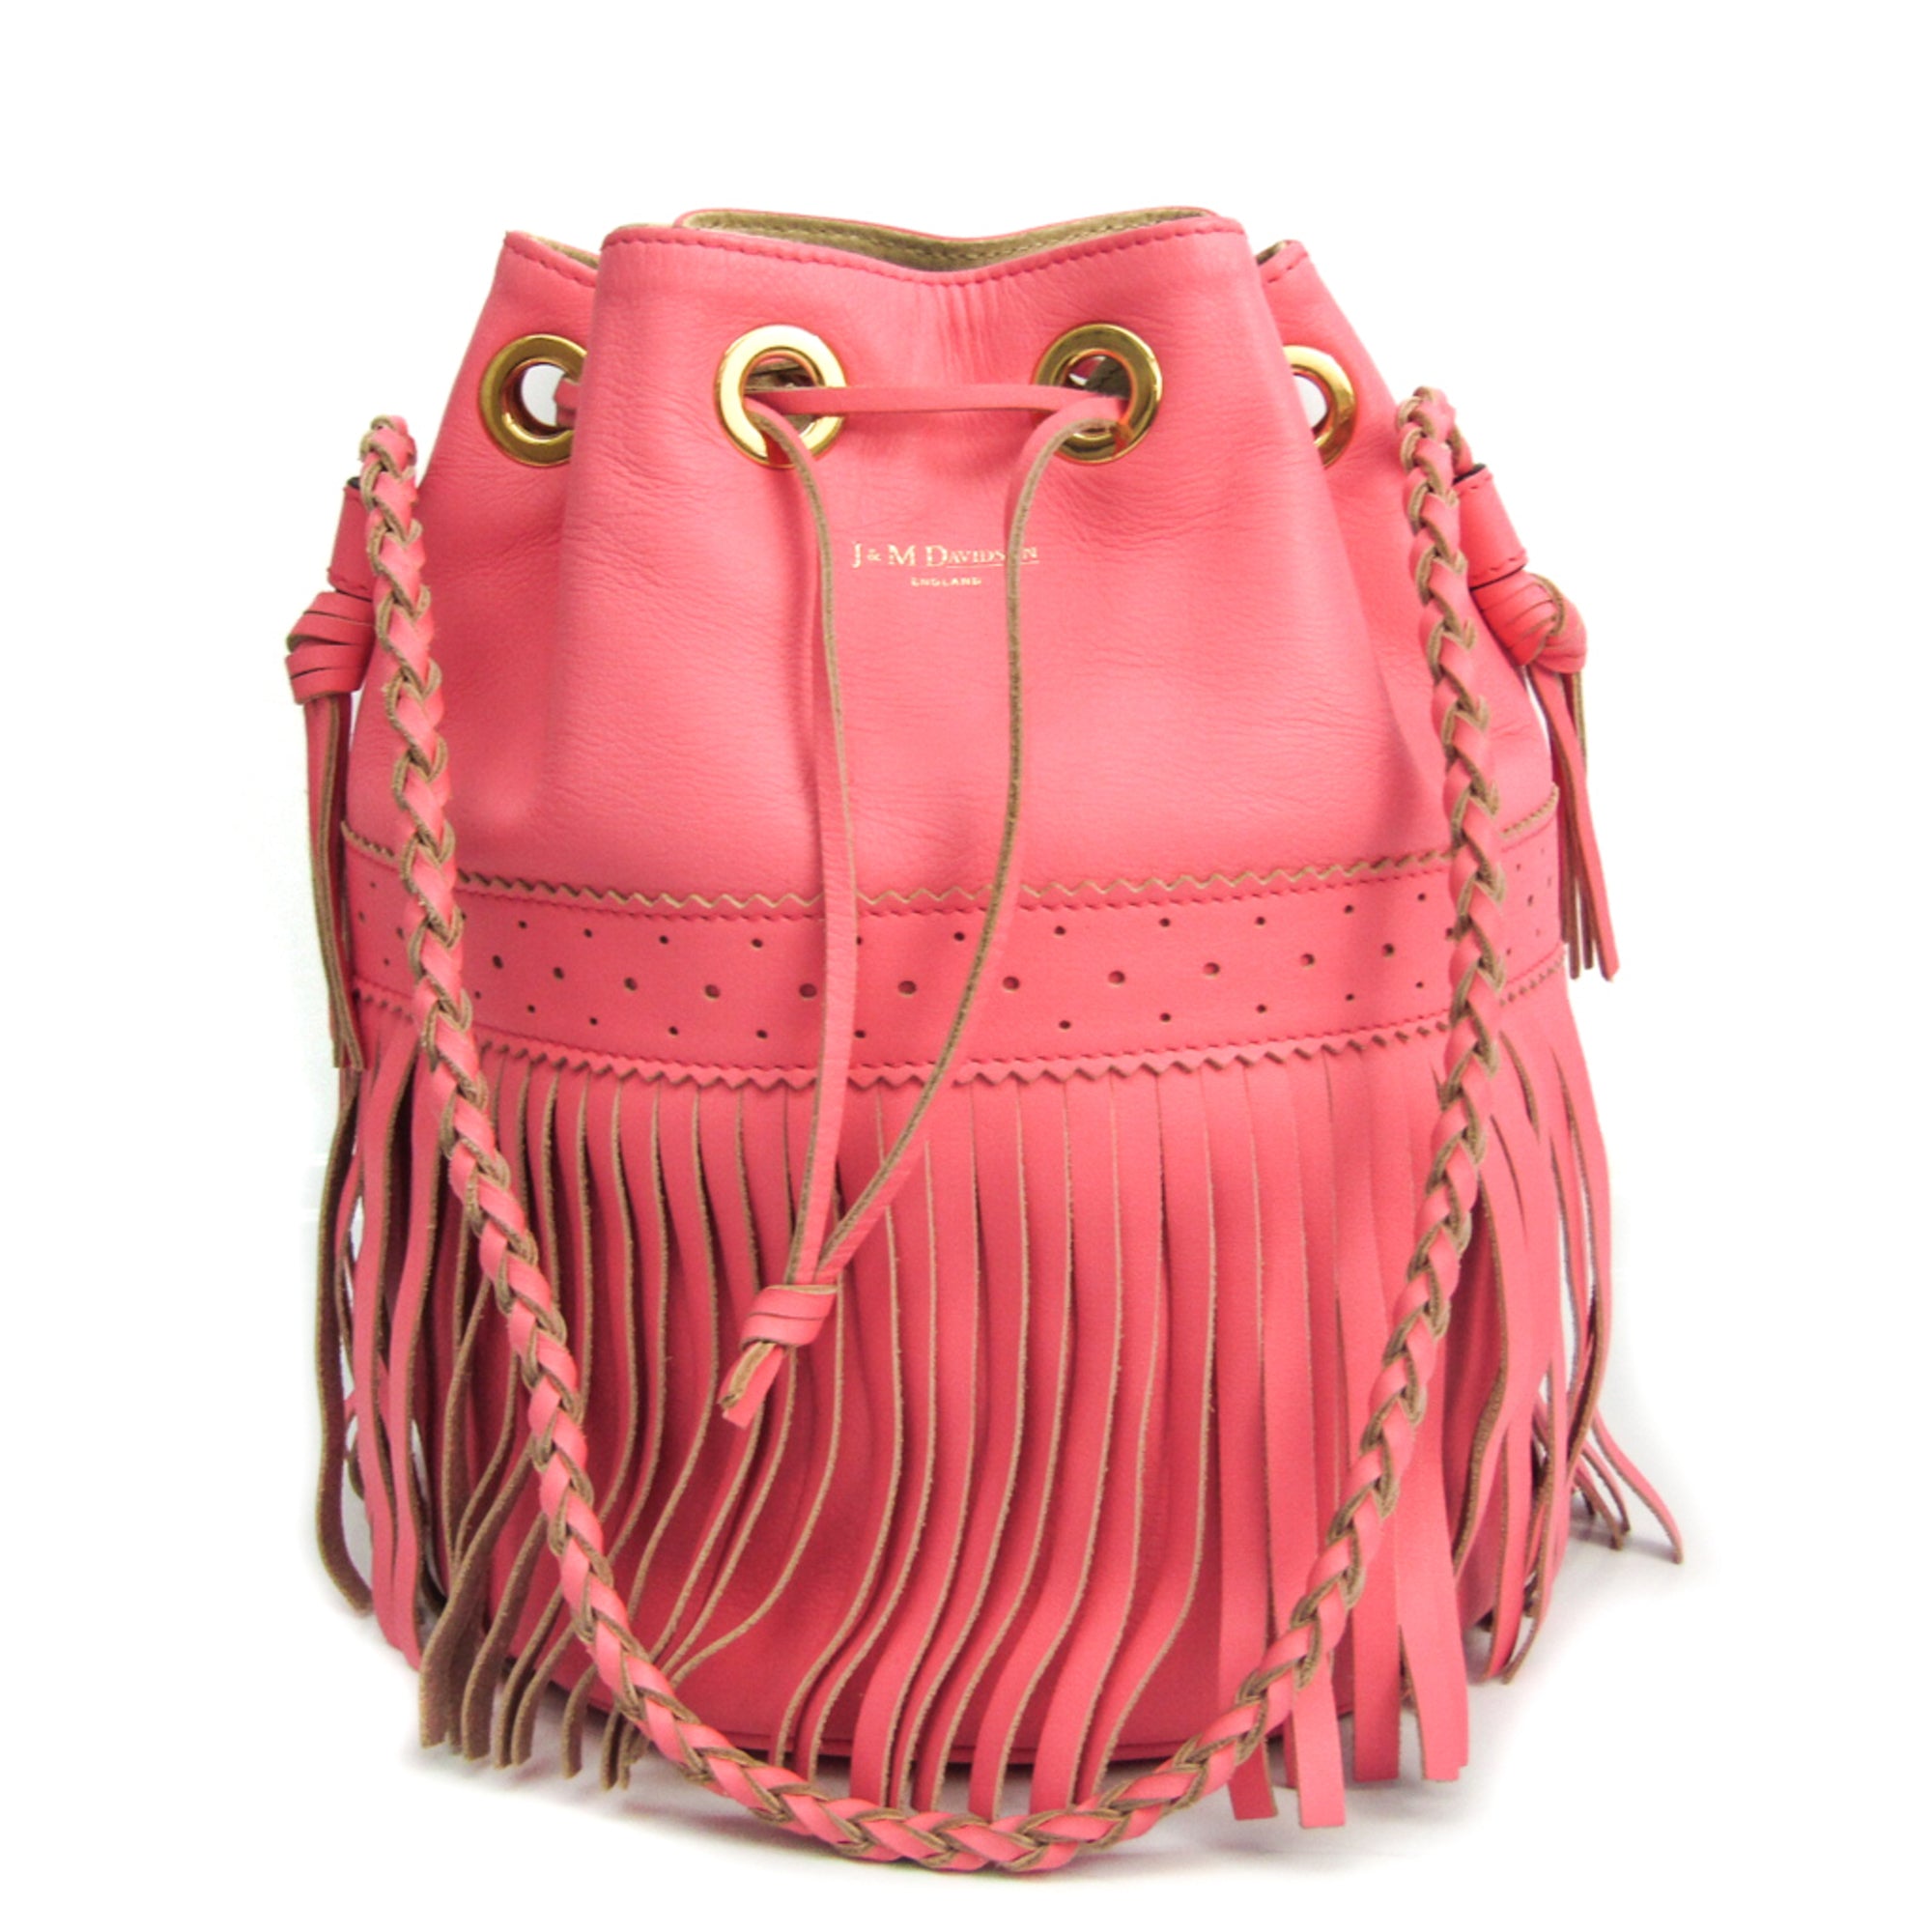 j&m davidson carnival l women's leather shoulder bag pink